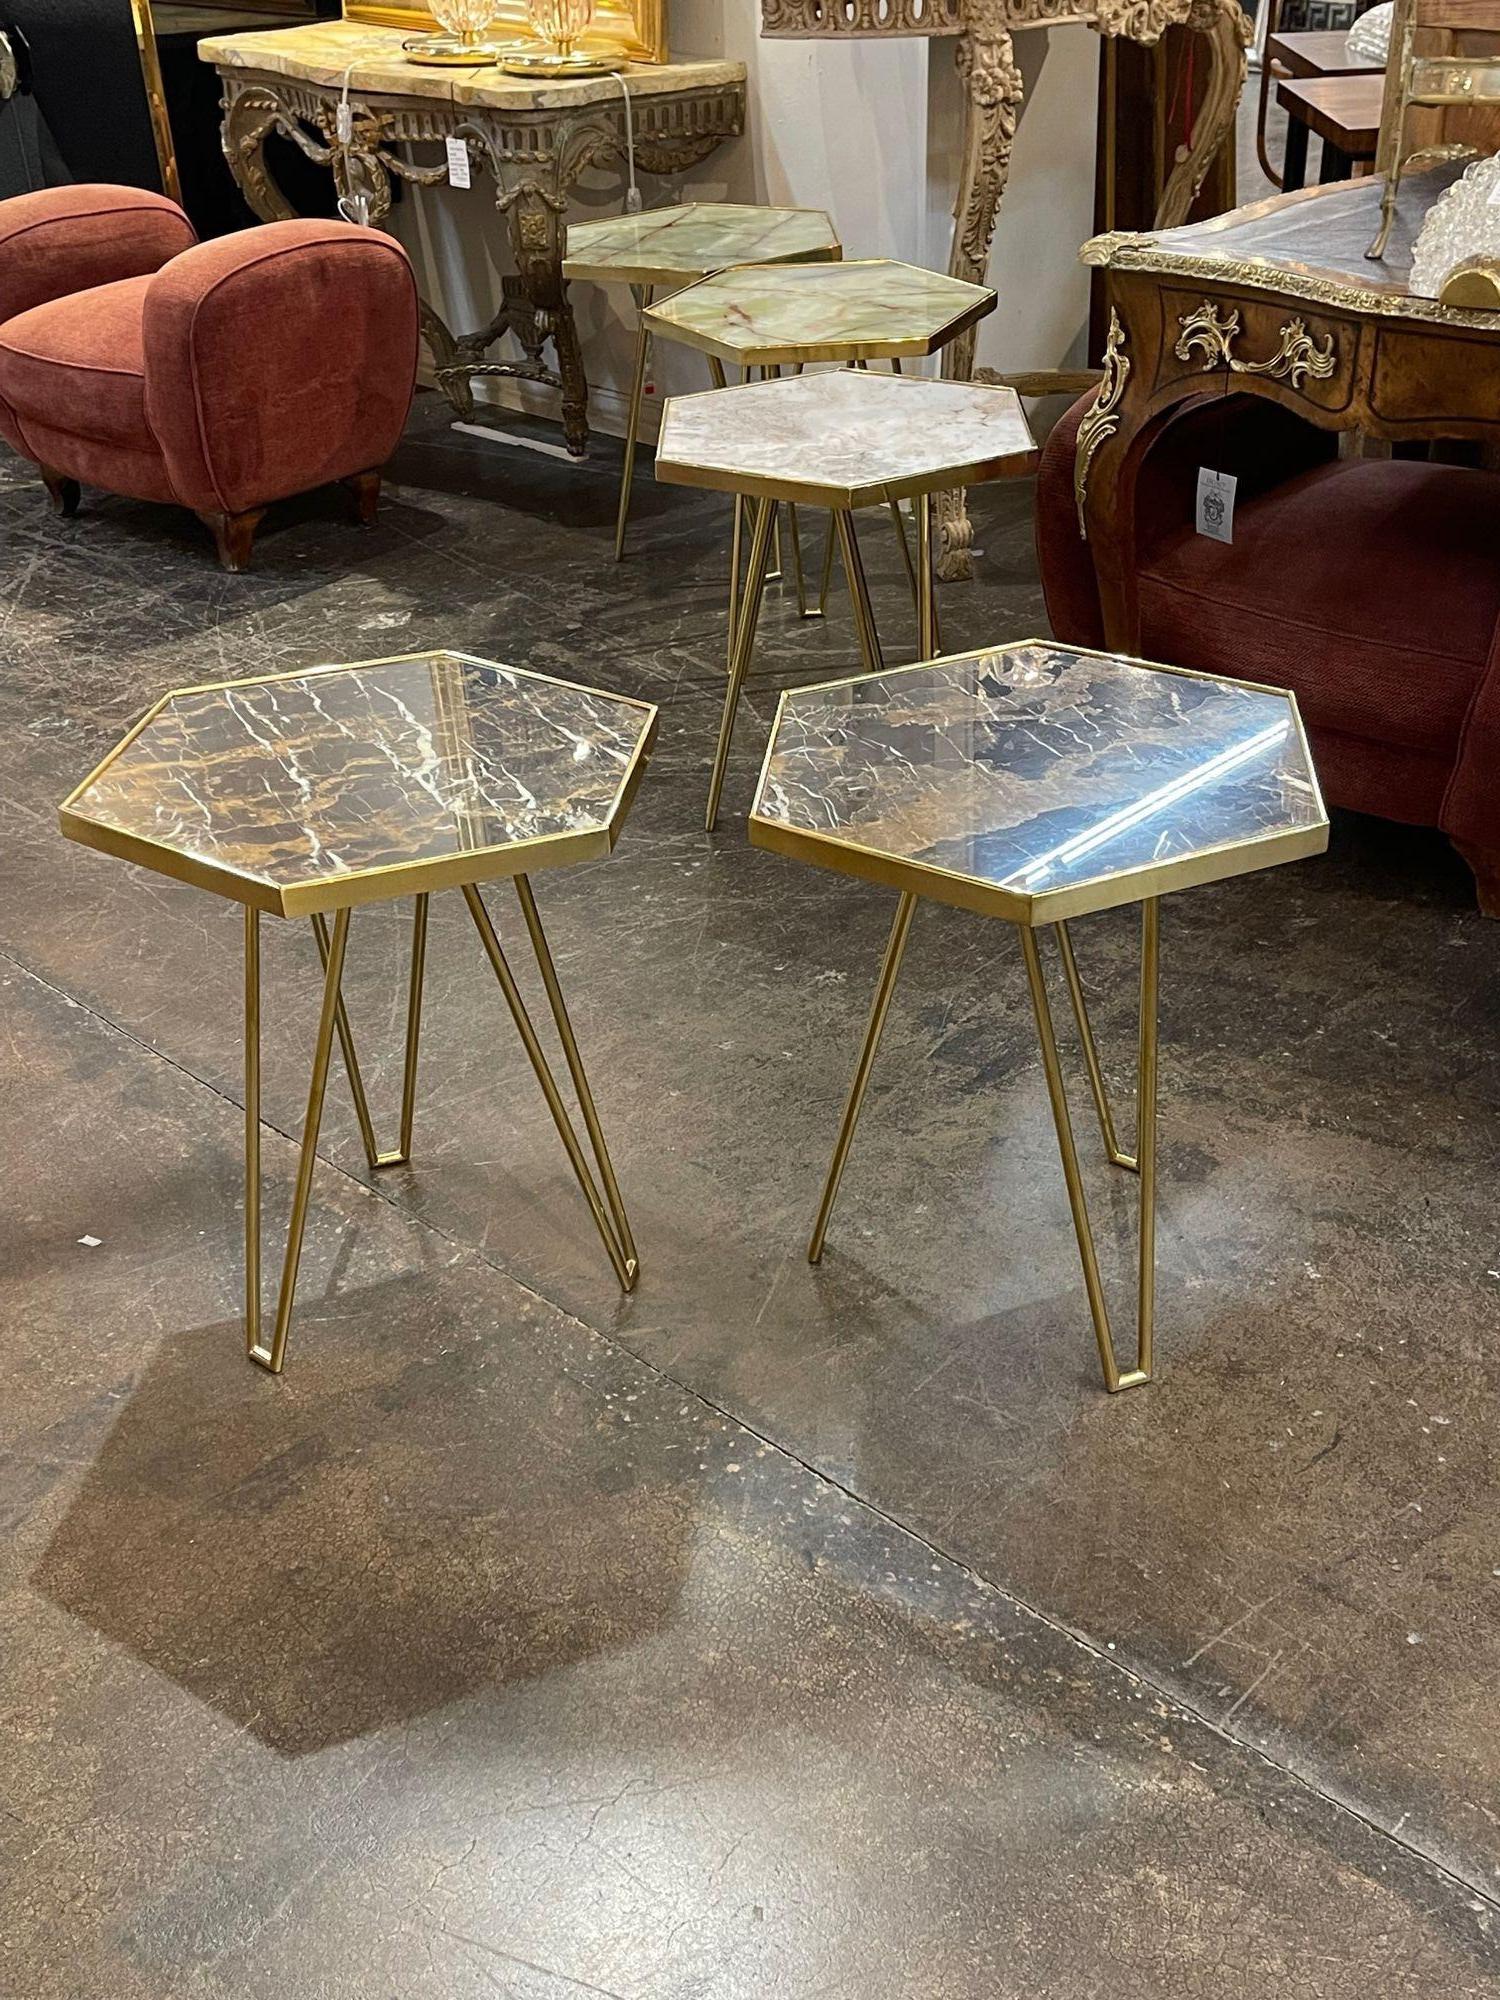 Table moderne italienne de forme hexagonale en laiton poli et marbre Nero Potoro. Vers 2000. Parfait pour les designs transitionnels d'aujourd'hui !